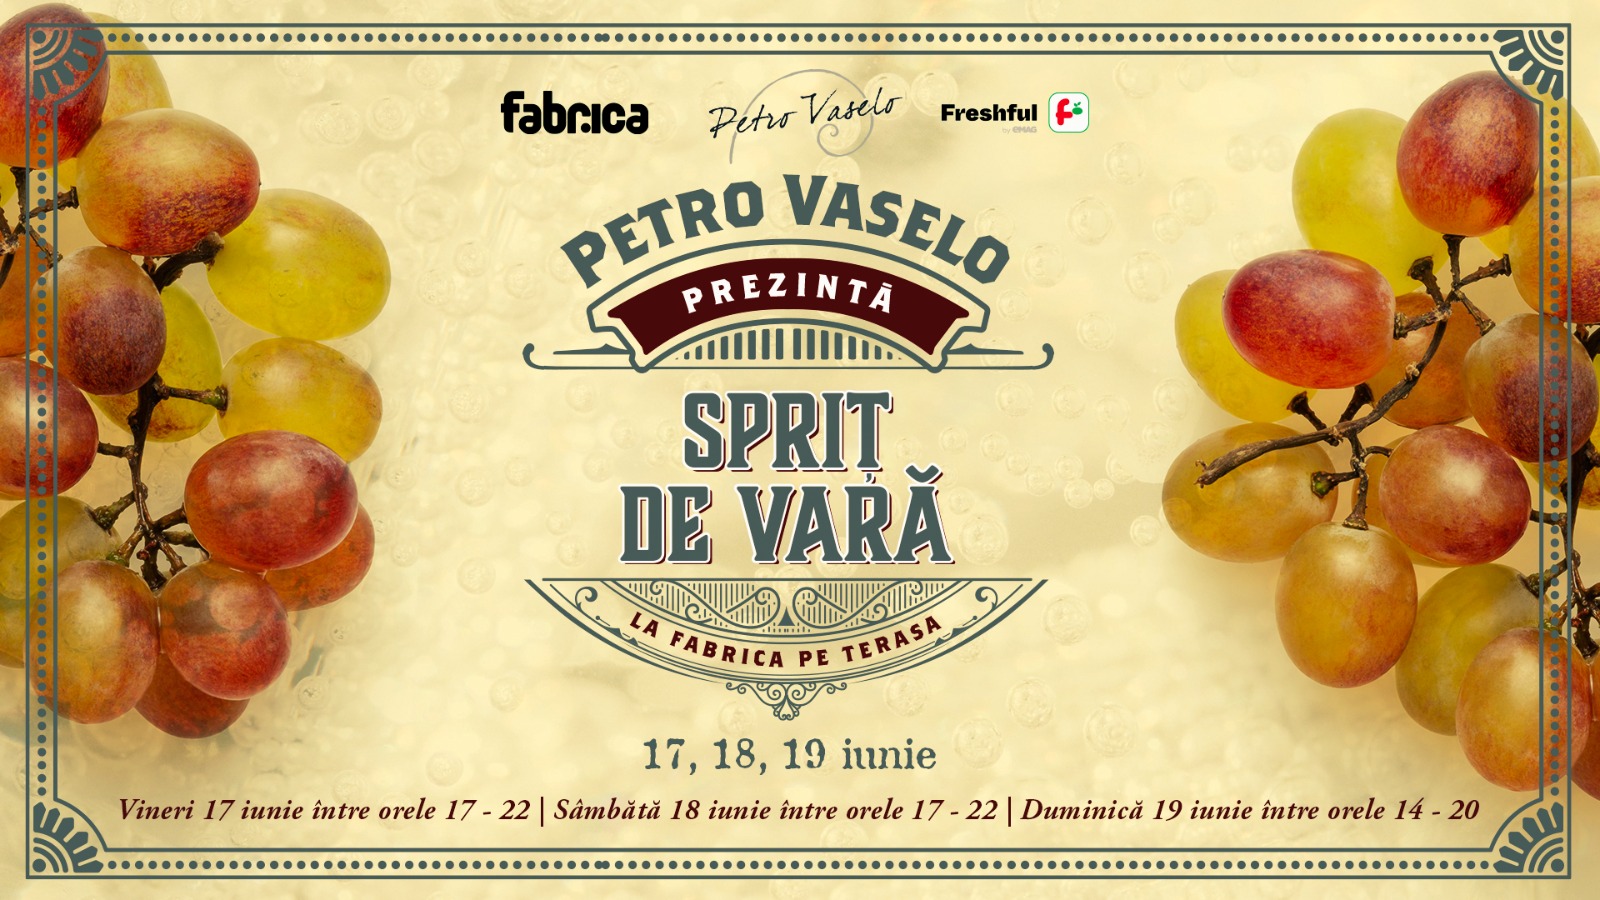 SPRIT DE VARA @ Fabrica Terasa by Petro Vaselo